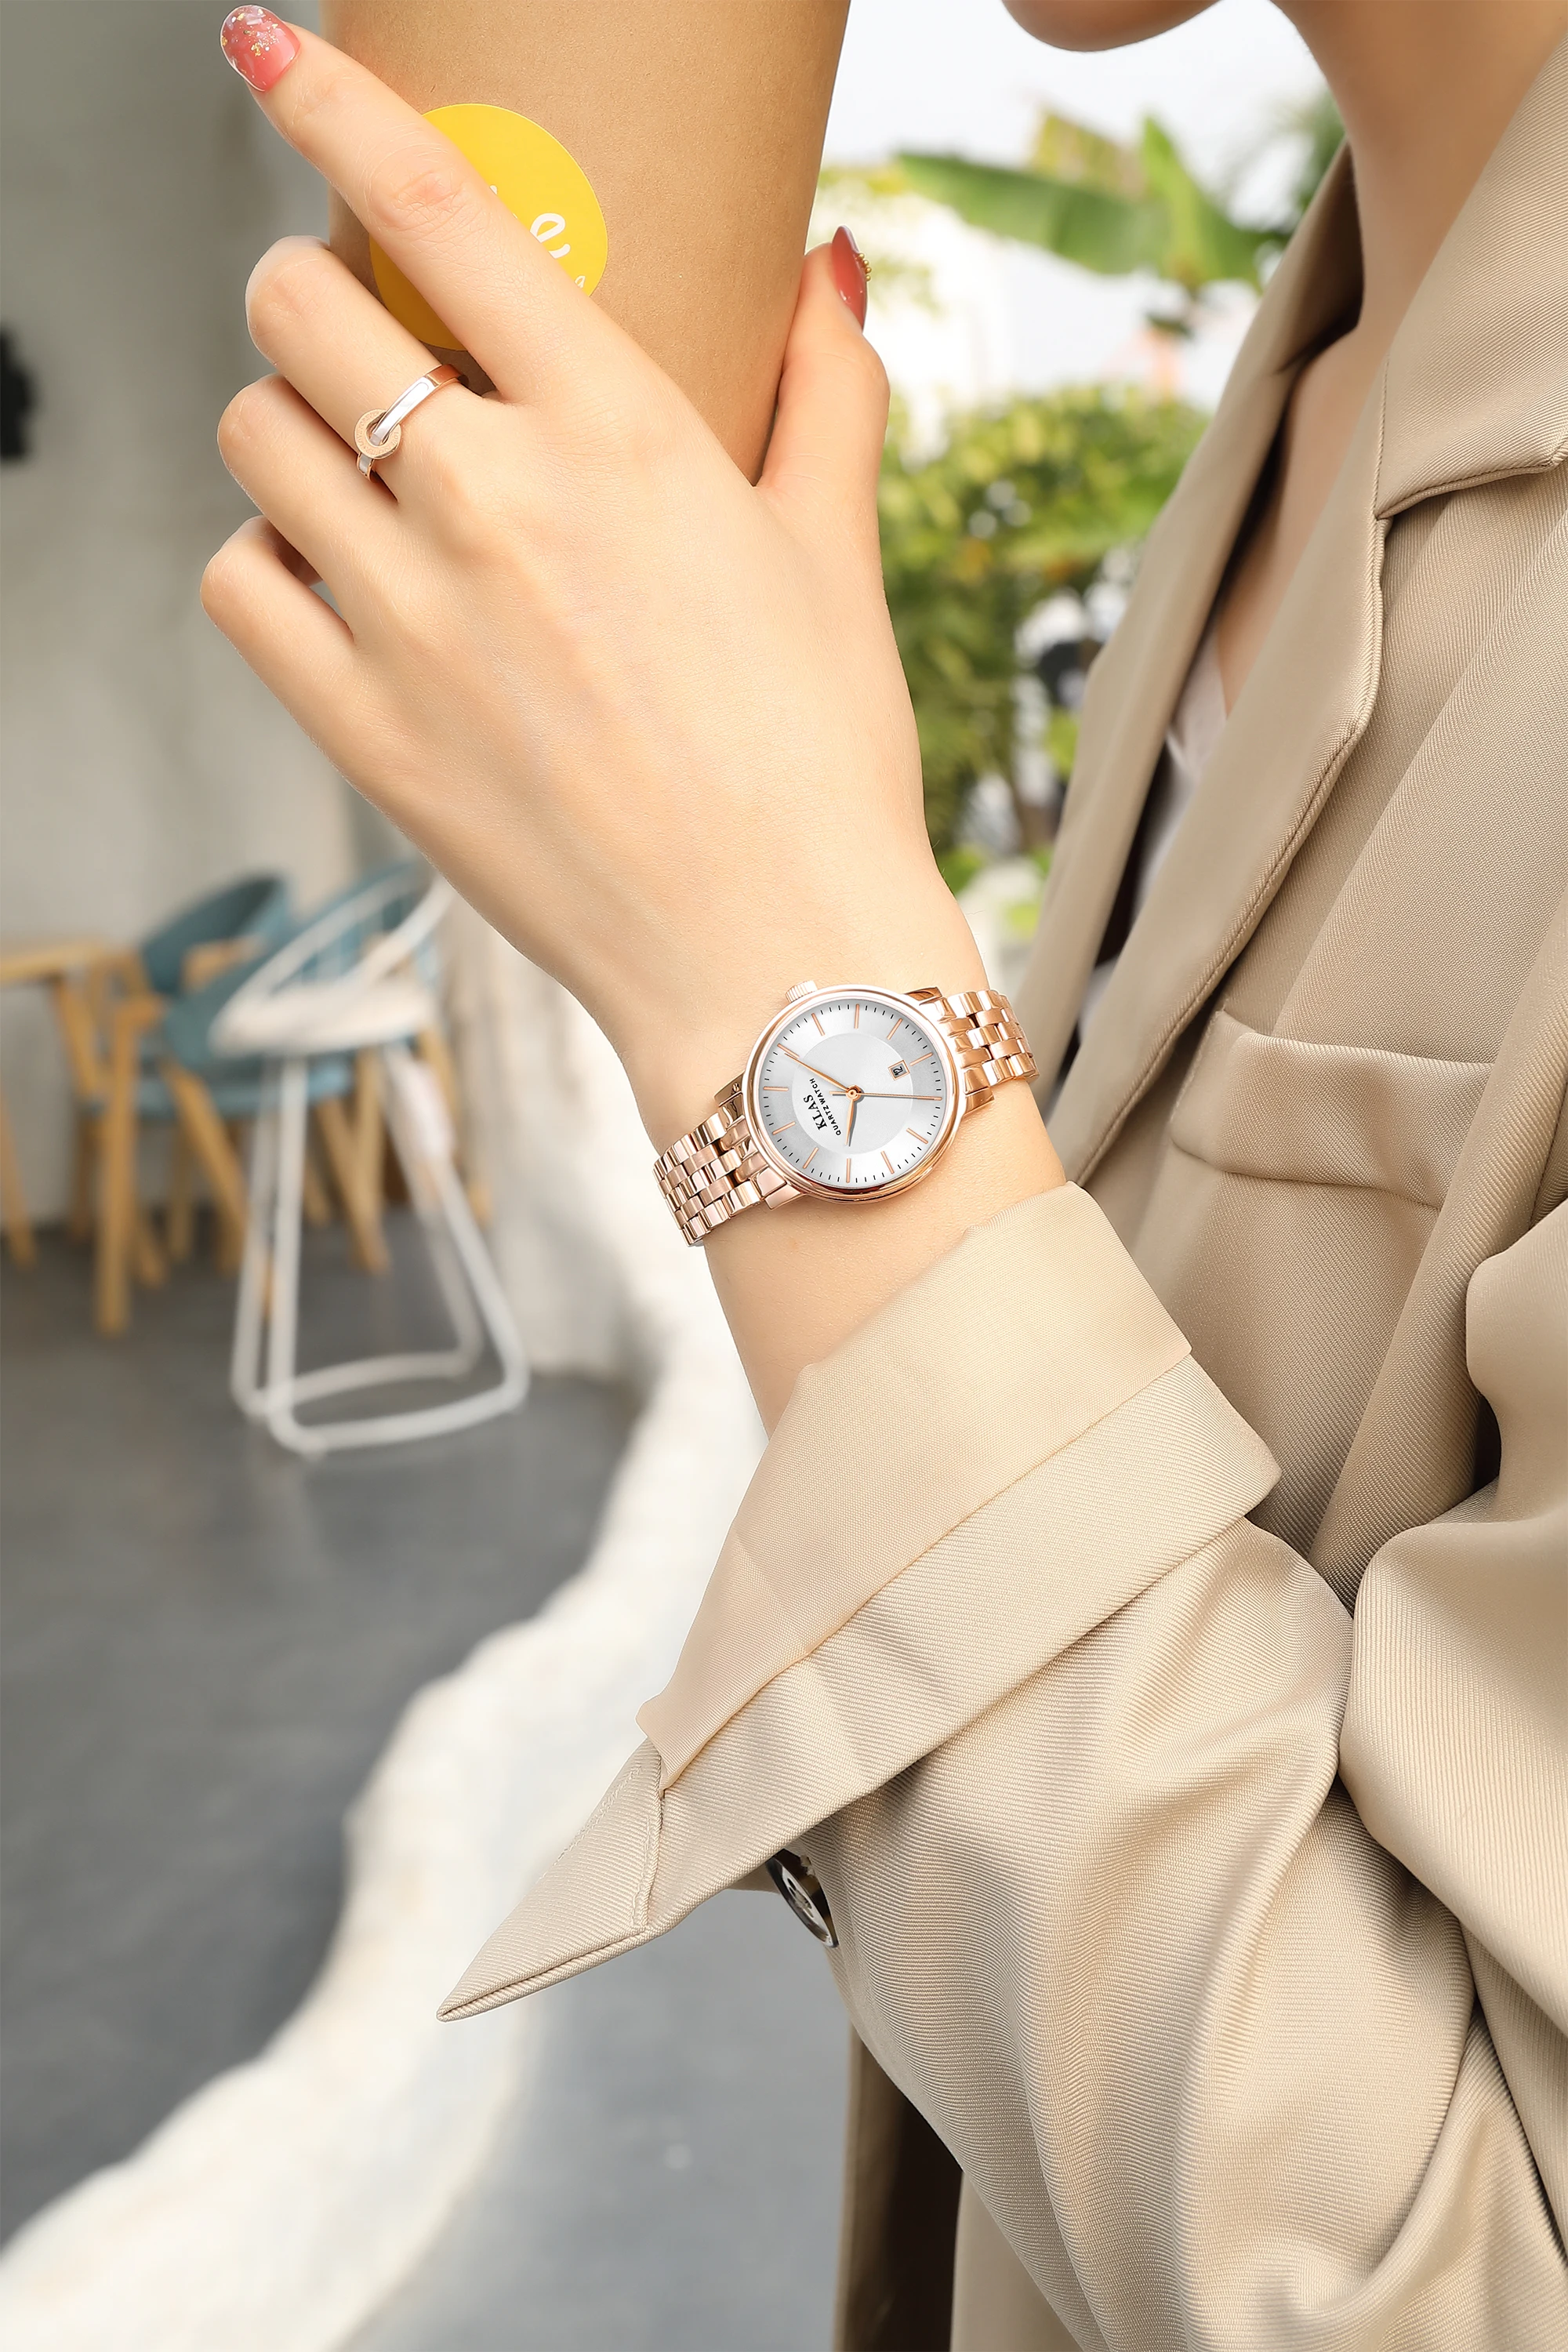 Round Custom Stainless Steel Women's Fashion Watch Elegant Ladies Quartz Wrist Band Watch KLAS brand watch for girls